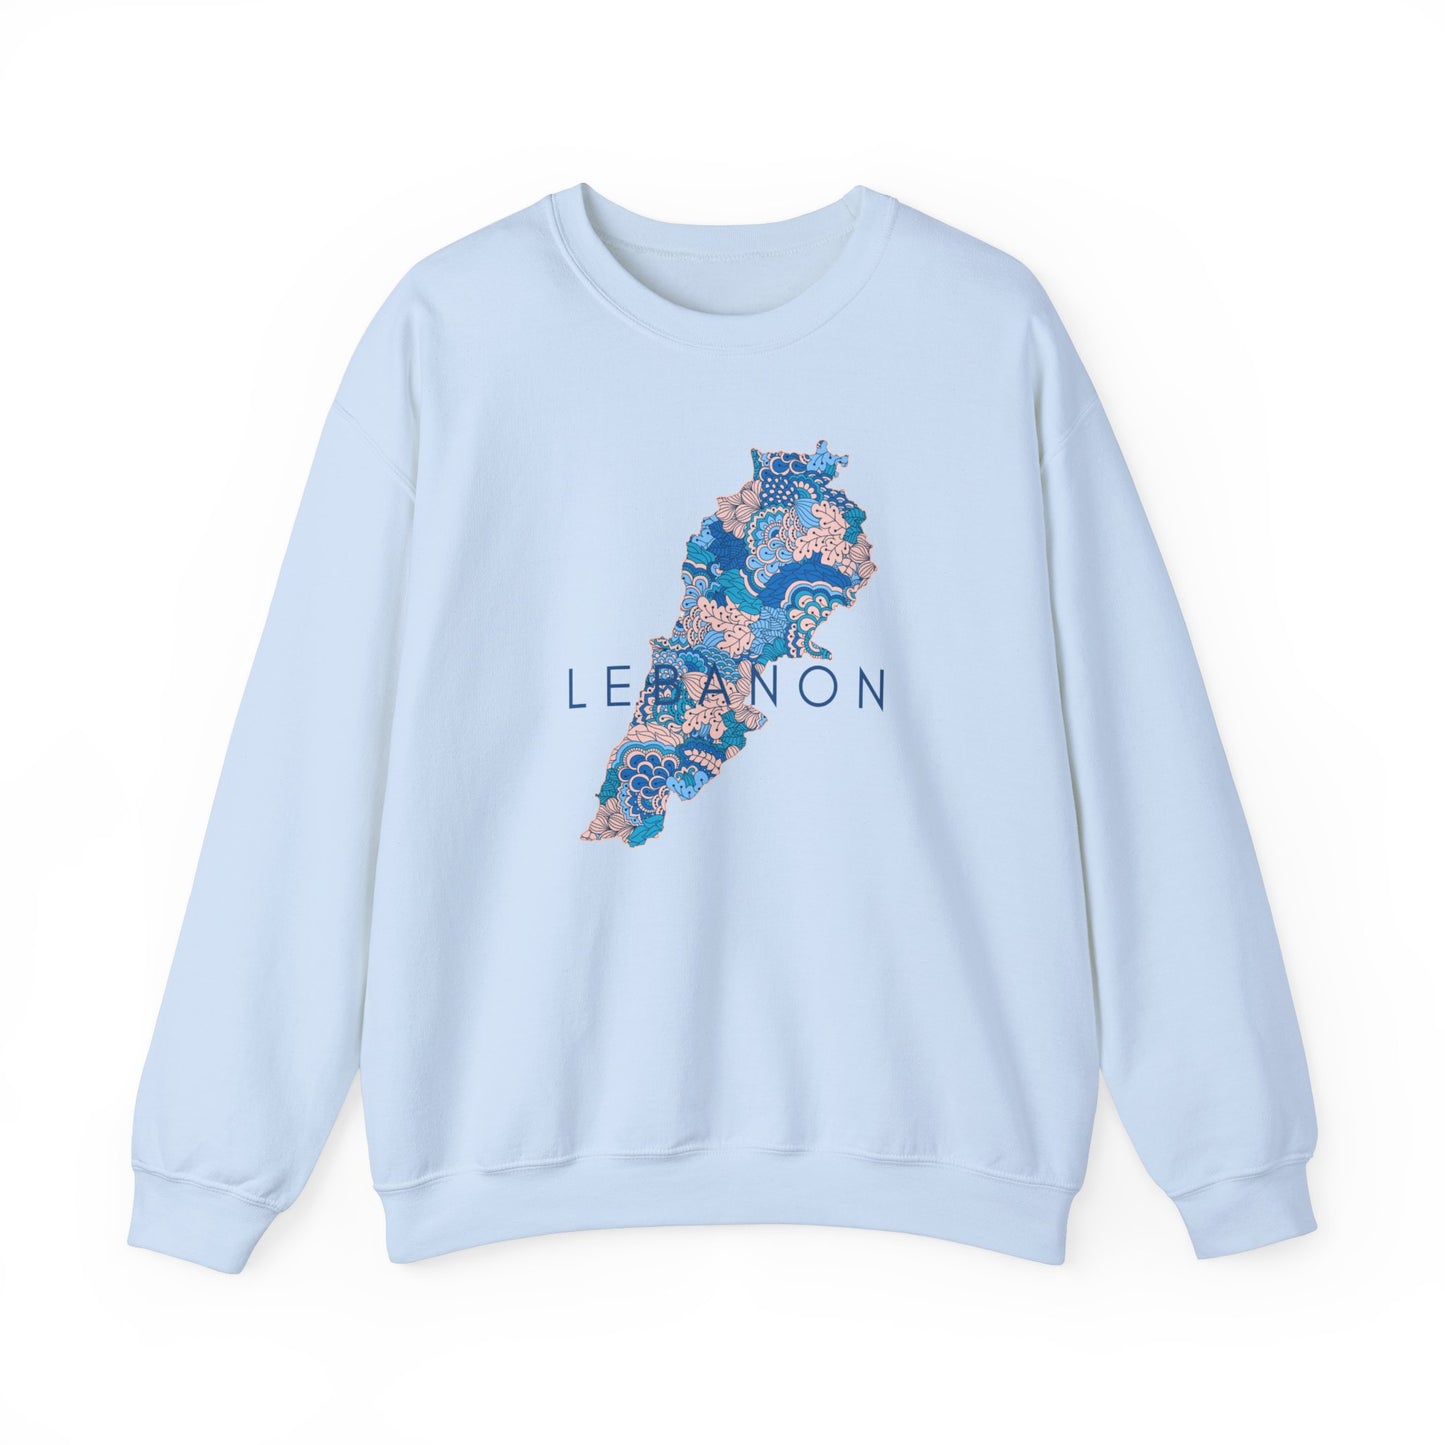 Adult | Lebanon Map Design | Crewneck Sweatshirt